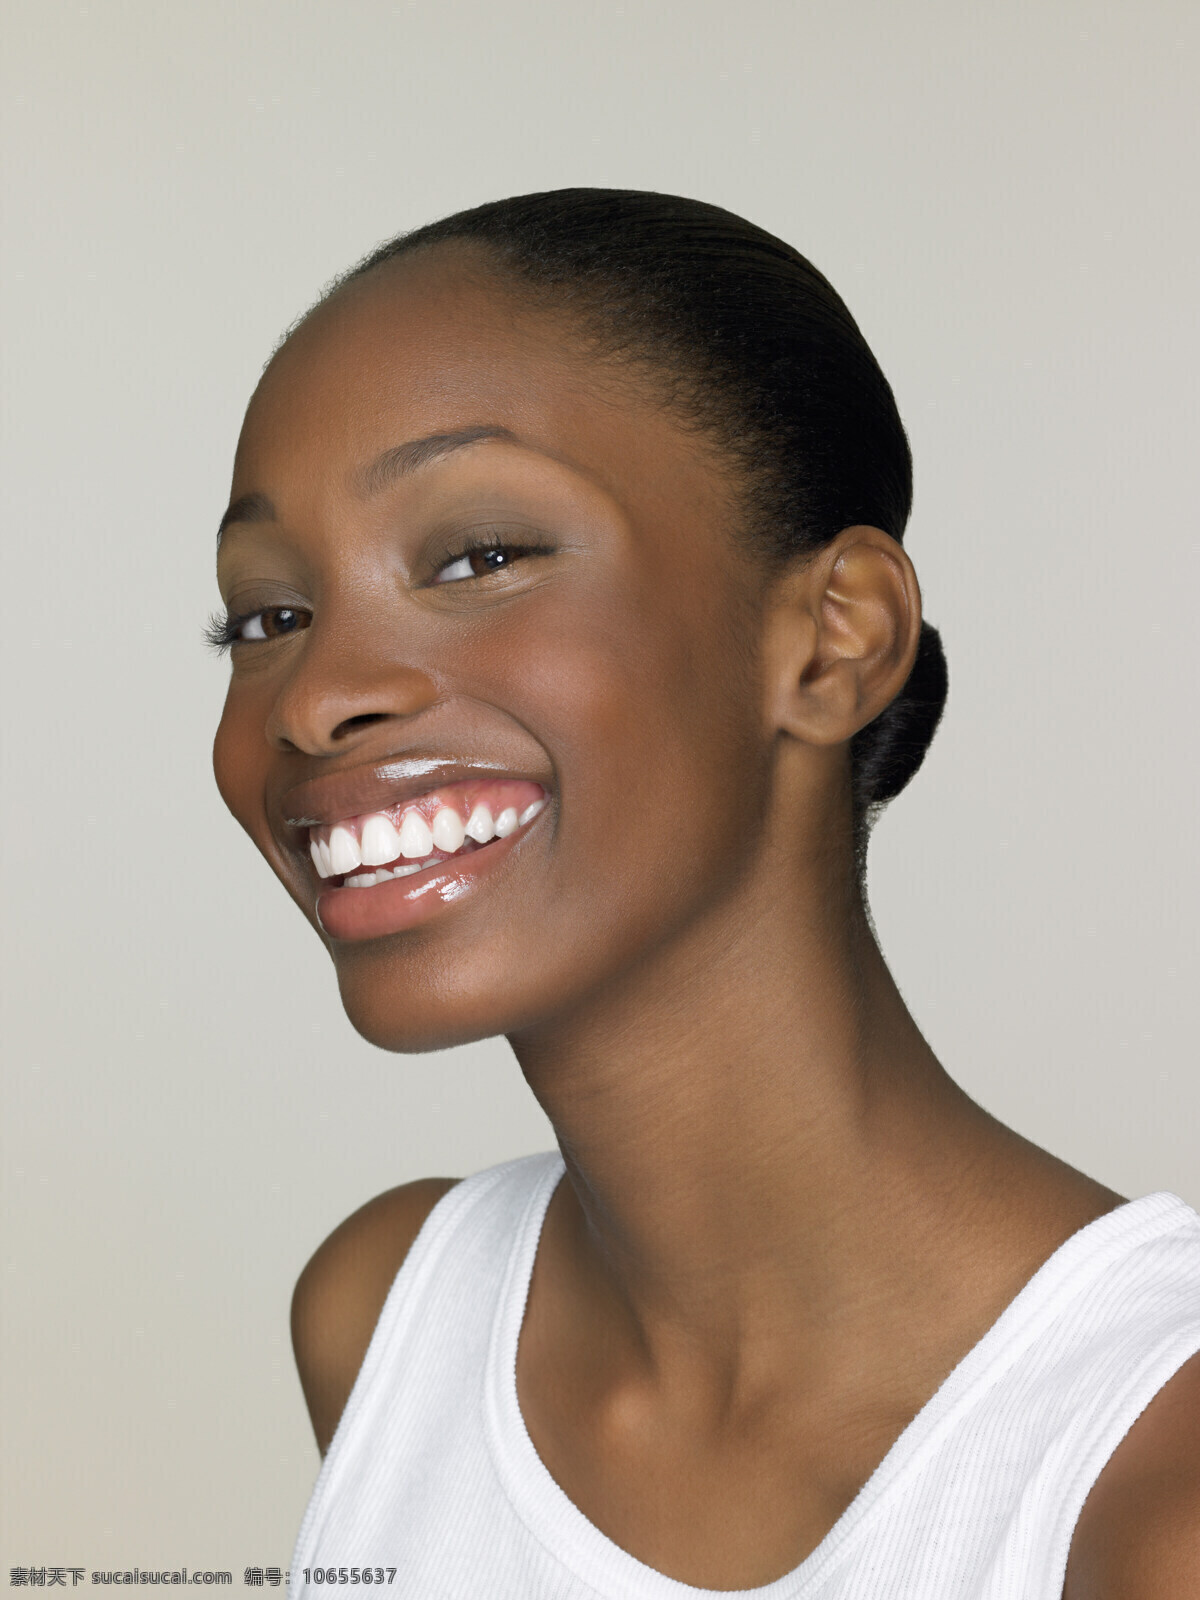 开心 笑容 黑人 女性 时尚青年 女人 性感美女 模特 黑人女性 开心笑容 美女图片 人物图片